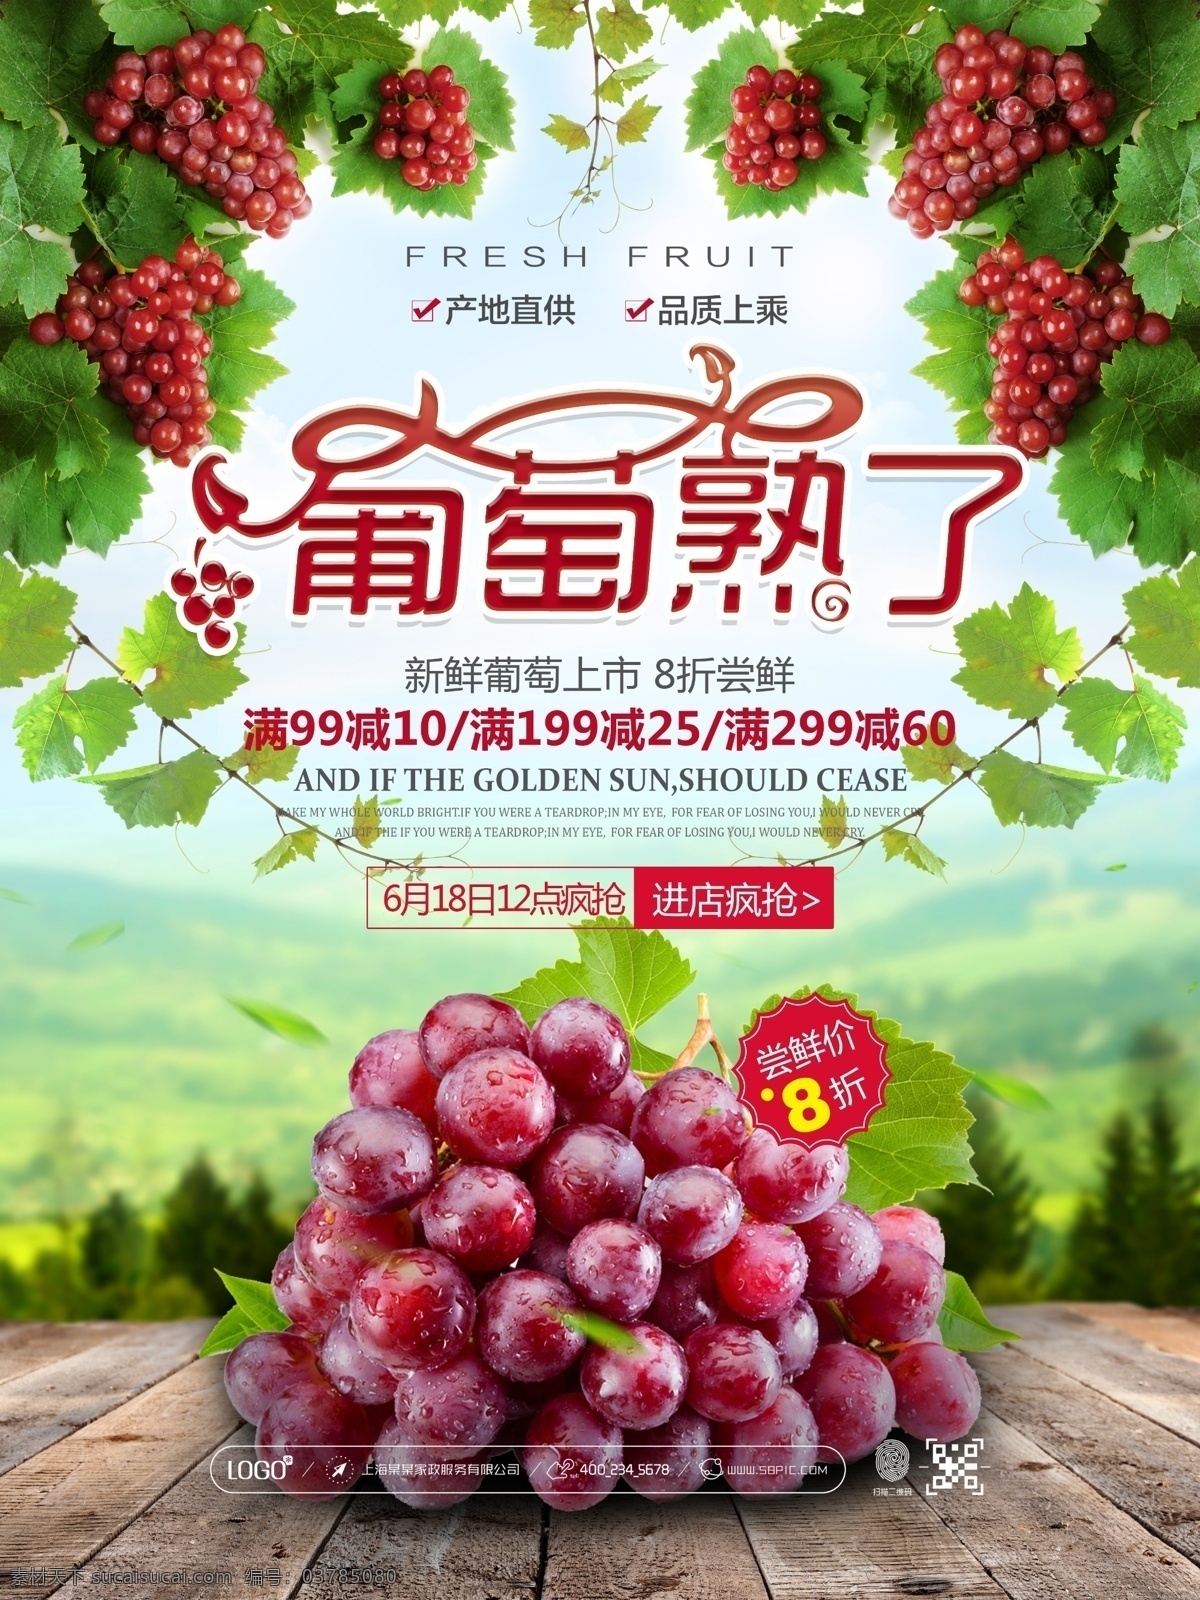 葡萄 熟 上市 促销 海报 葡萄熟了 新疆葡萄 天然 有机 水果 原生态 紫葡萄 特级葡萄 产地直供 水果店 水果批发 超市 活动